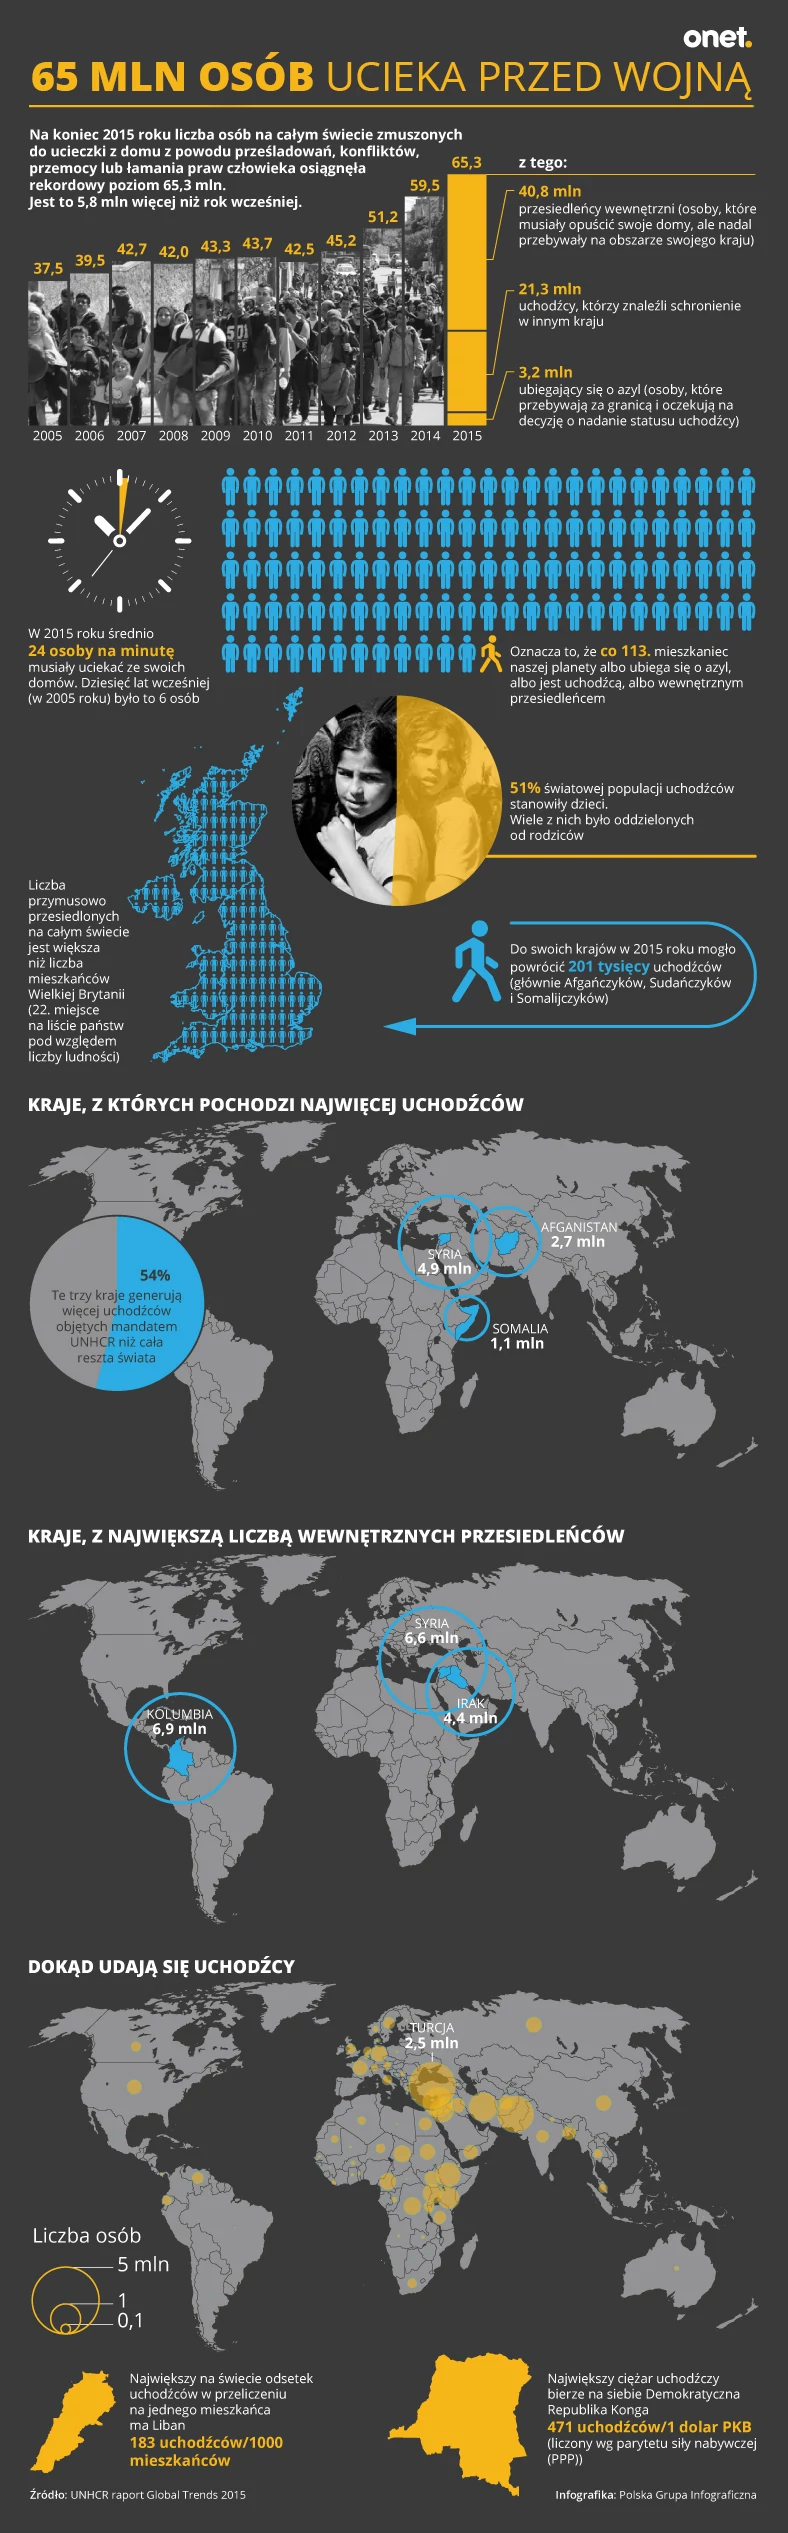 65 mln ludzi ucieka przed wojną - infografika